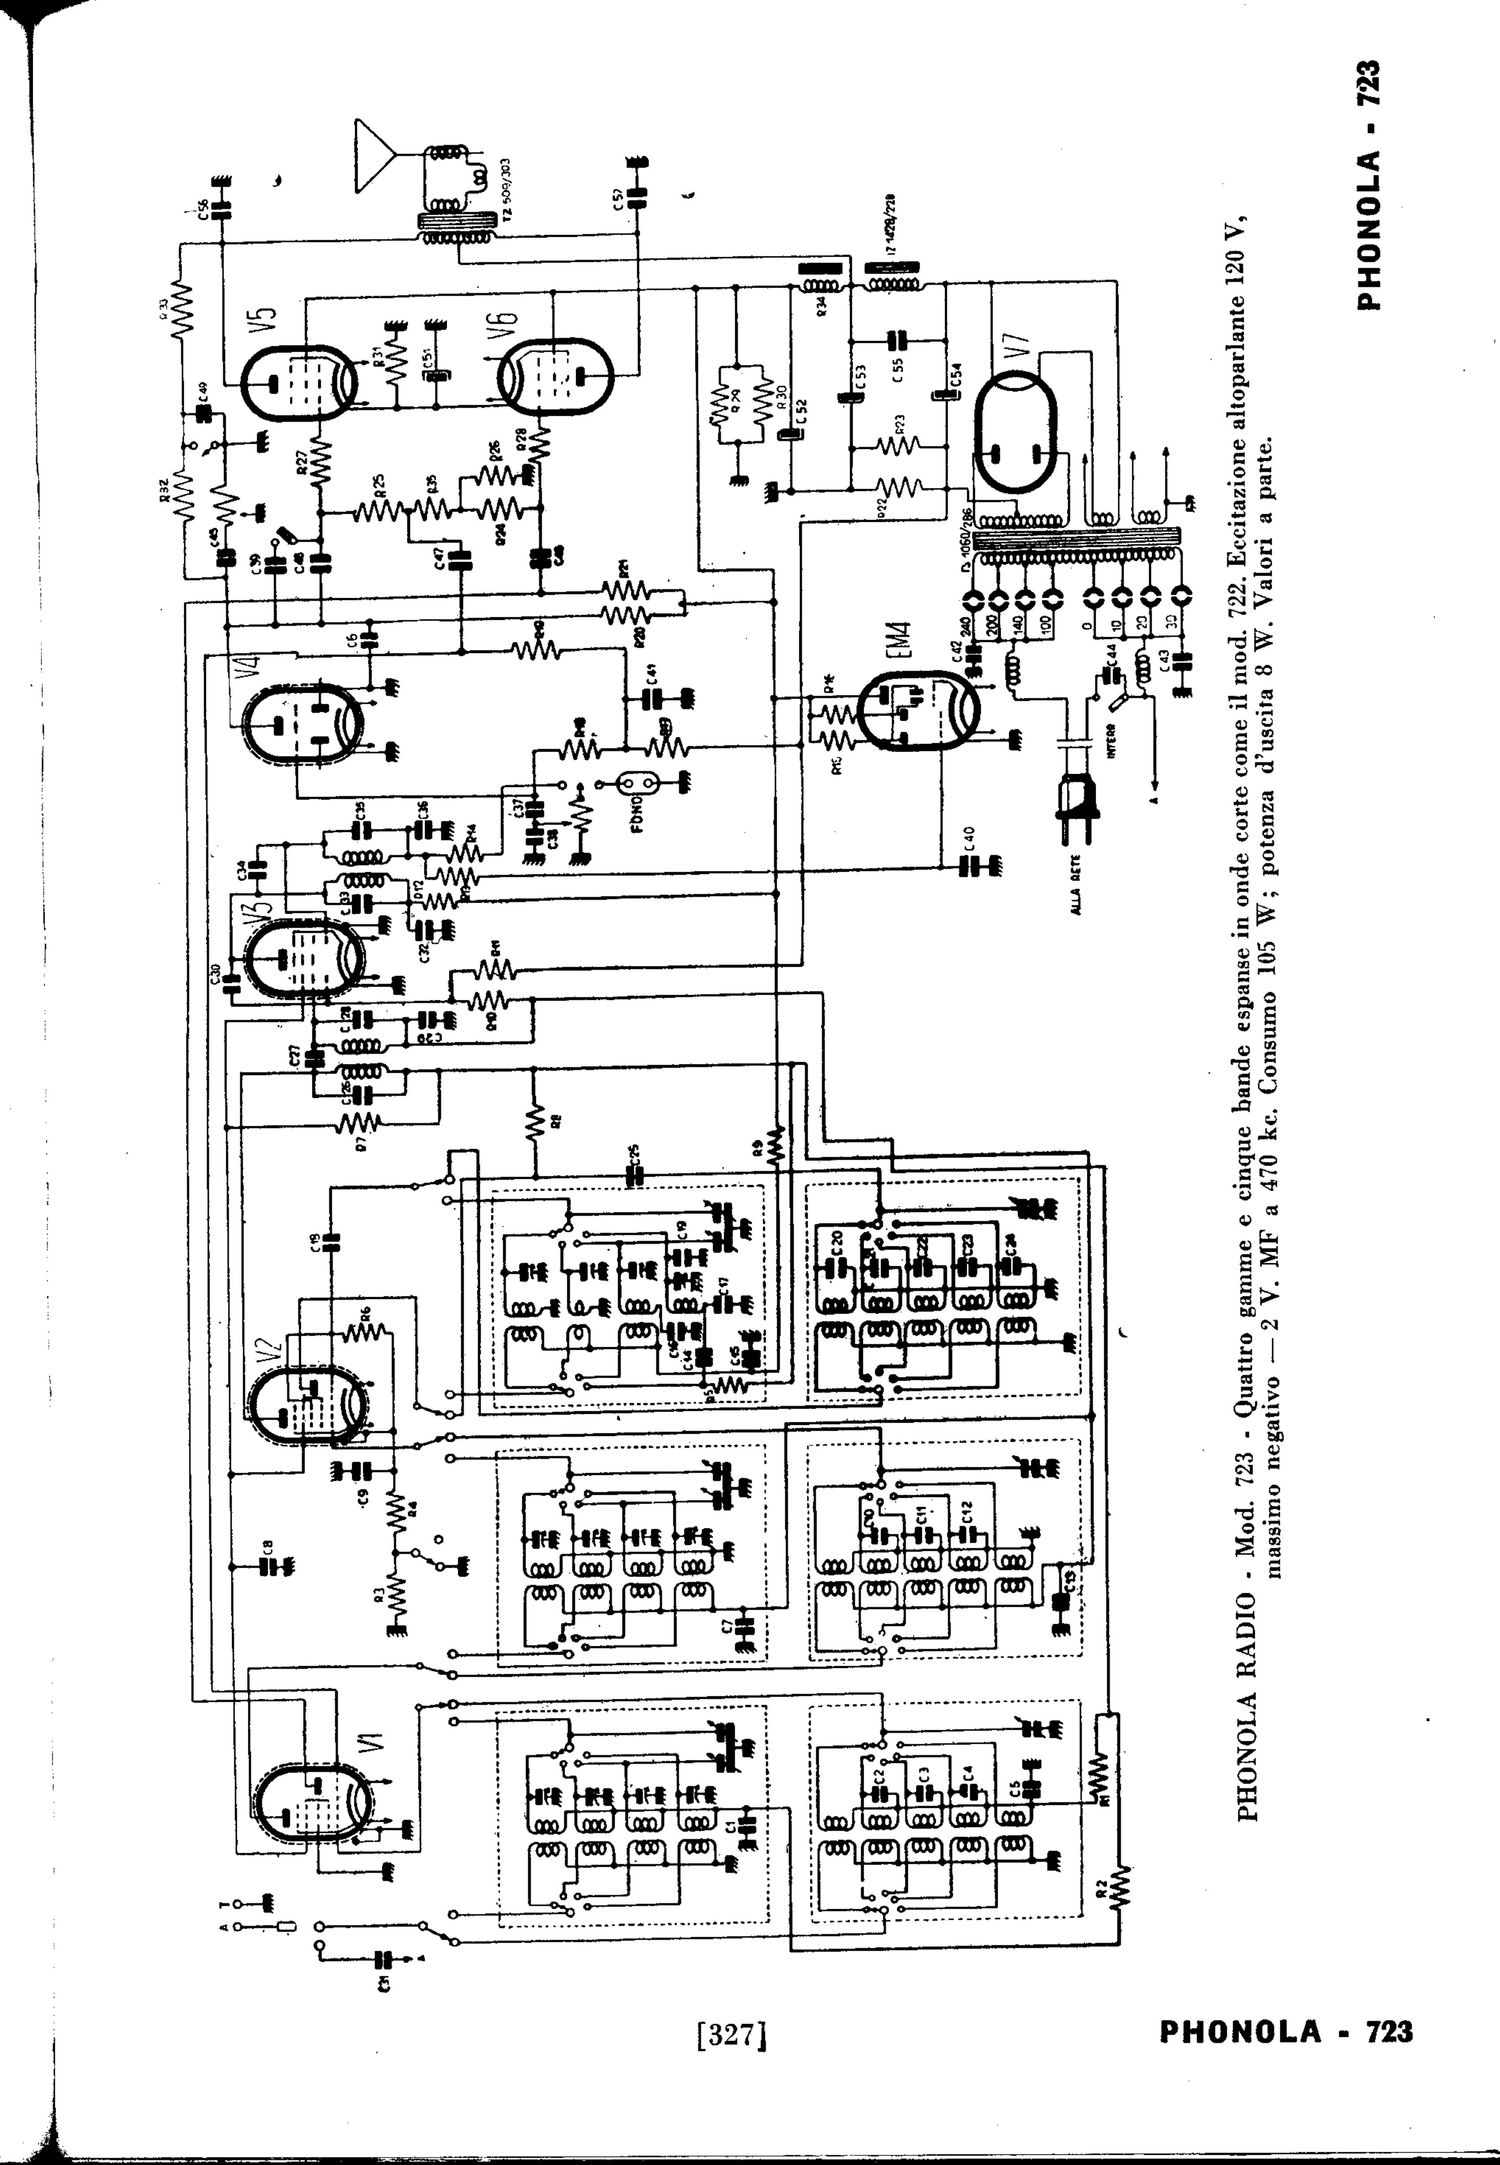 phonola 723 schematic